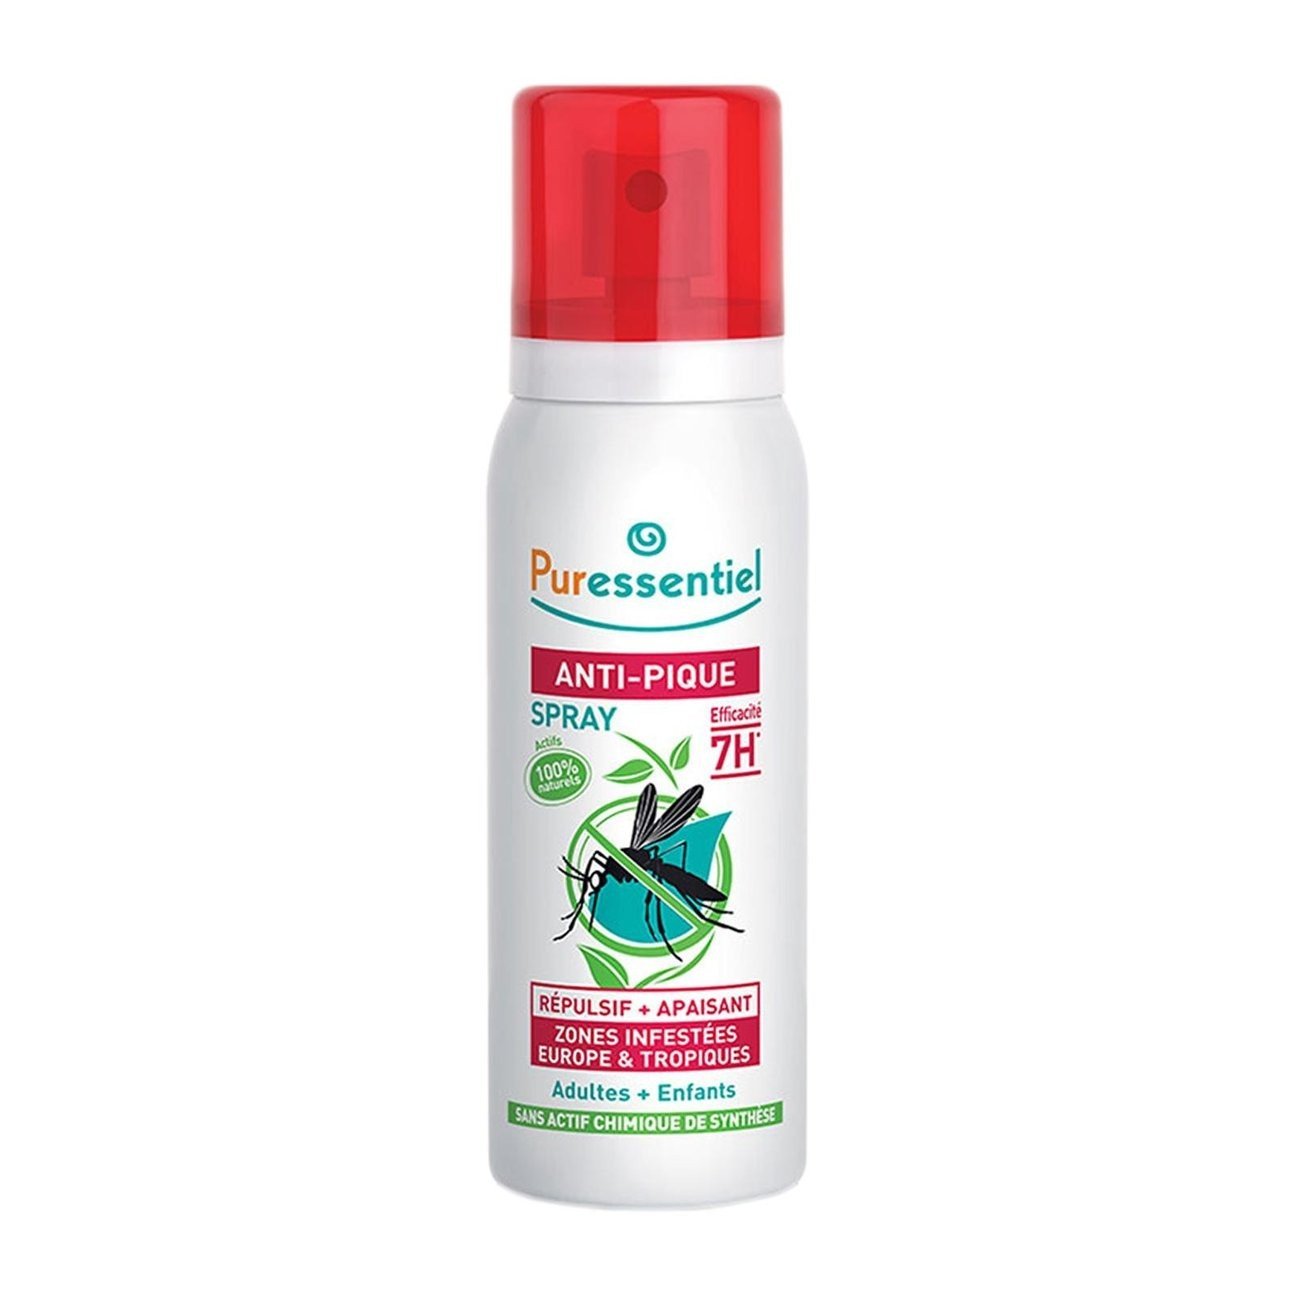 Puressentiel Anti-Pique Spray Répulsif Et Apaisant 7h Efficacité Zones Infestées 75ml